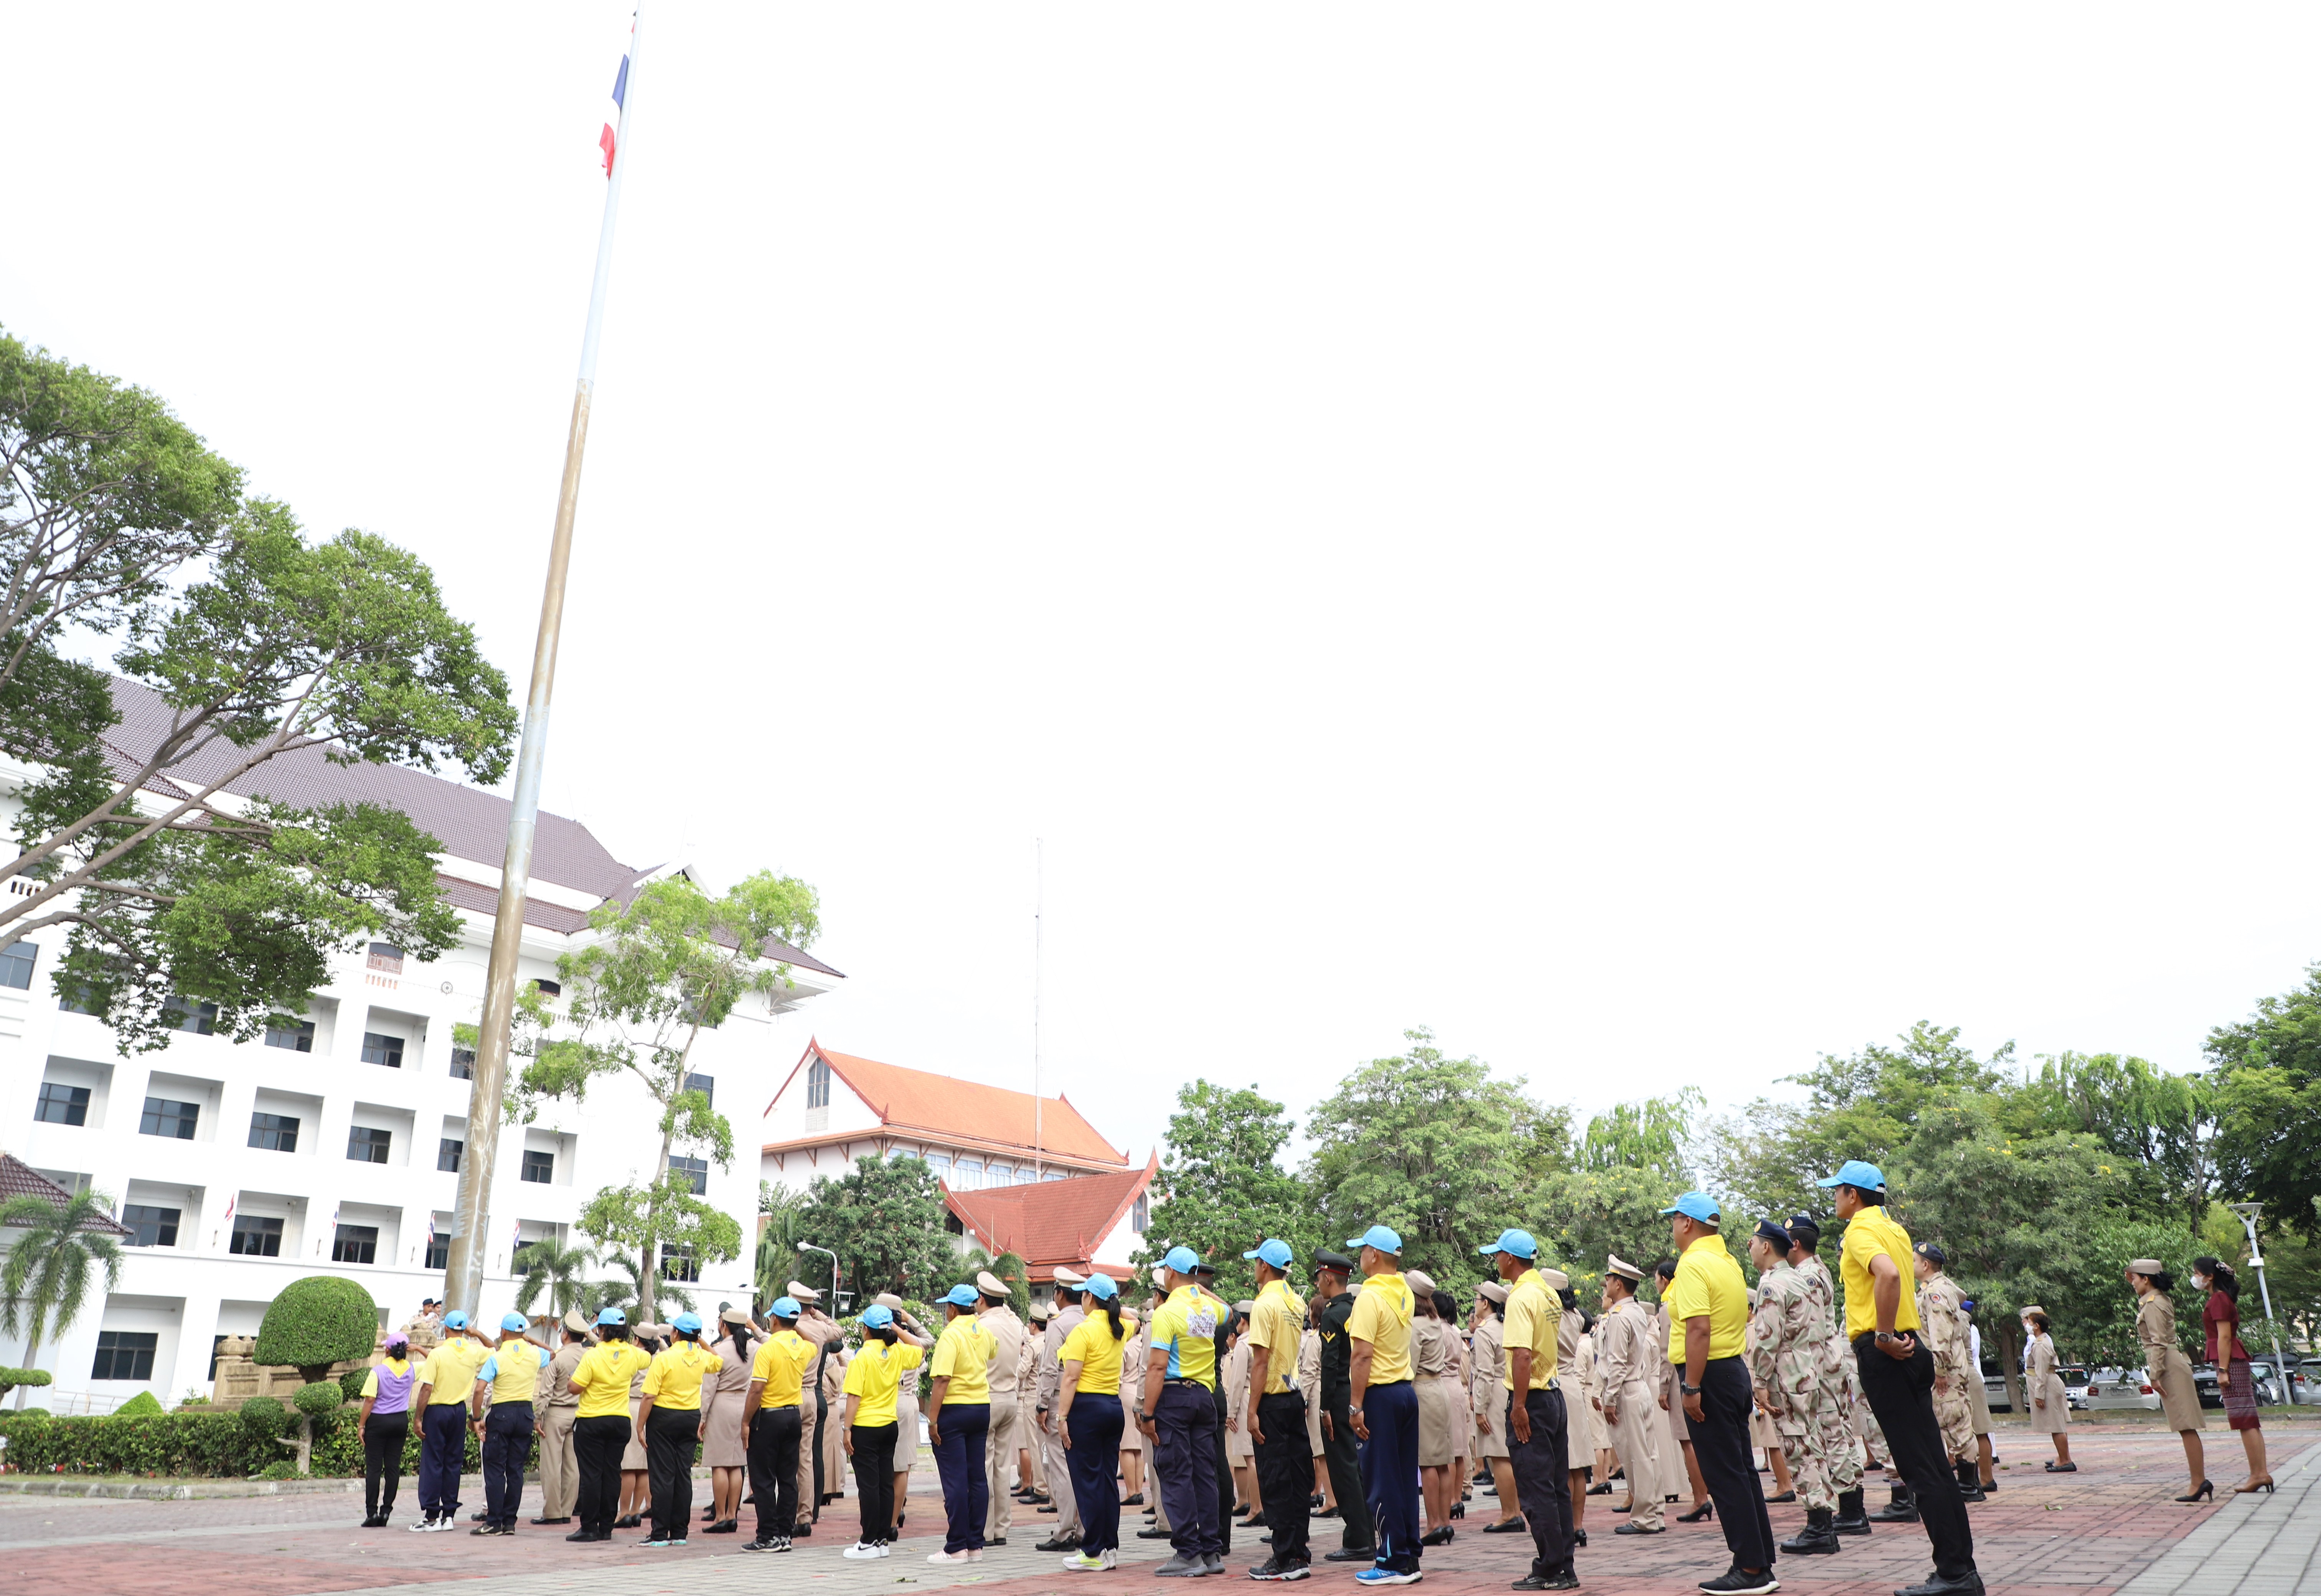 ผู้ว่าราชการจังหวัดสงขลา นำส่วนราชการร่วมเคารพธงชาติและร้องเพลงชาติไทย เนื่องในวันพระราชทานธงชาติไทย 28 กันยายน ประจำปี 2566 น้อมรำลึกถึงพระบาทสมเด็จพระมงกุฎเกล้า ที่ทรงพระราชทานธงไตรรงค์เป็นธงชาติไทย